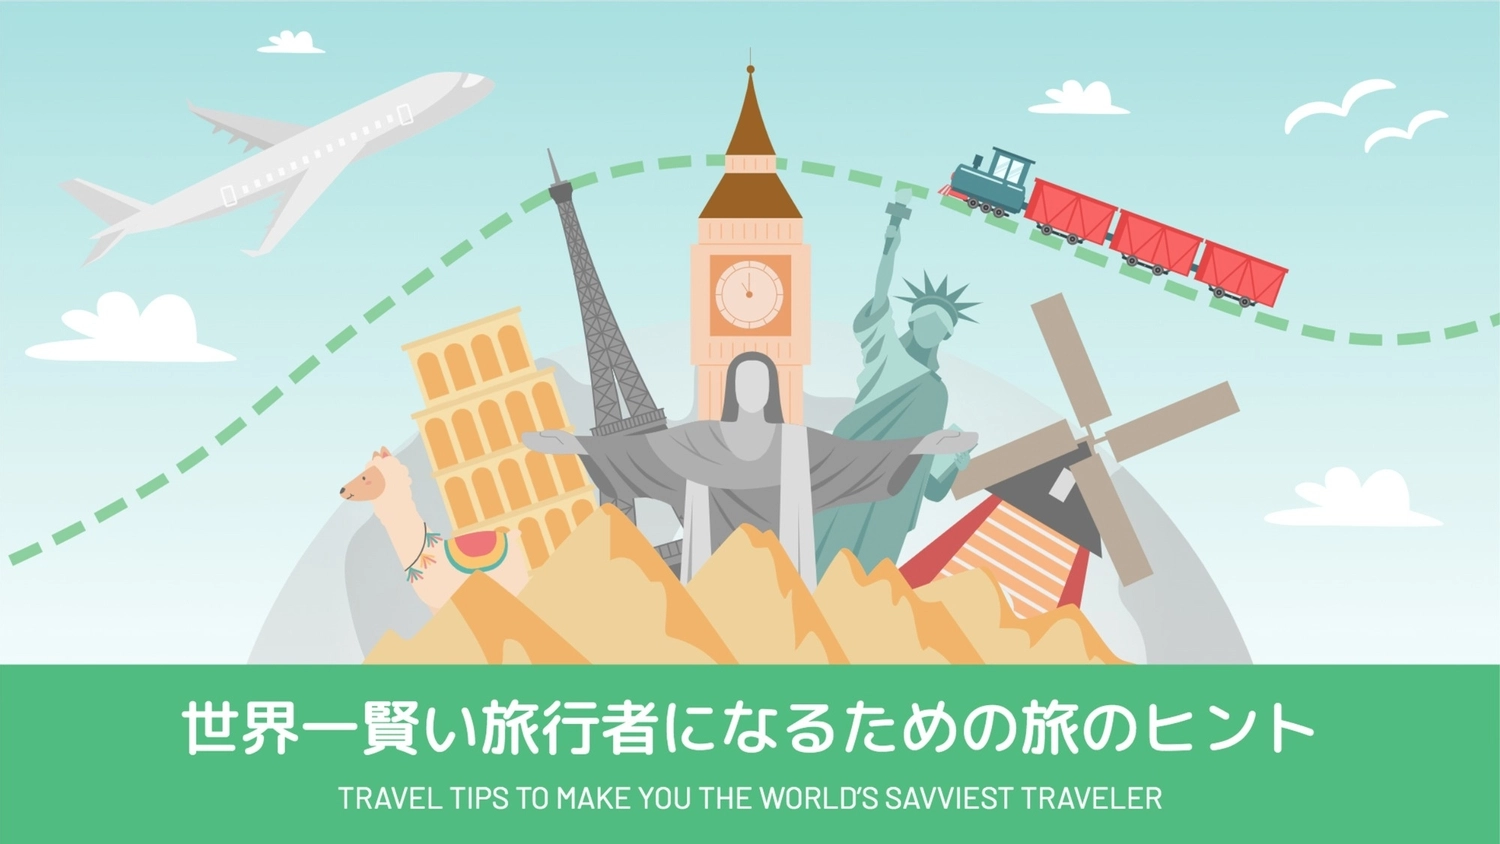 世界一賢い旅行者になる, plane, create, design, Blog Banner template